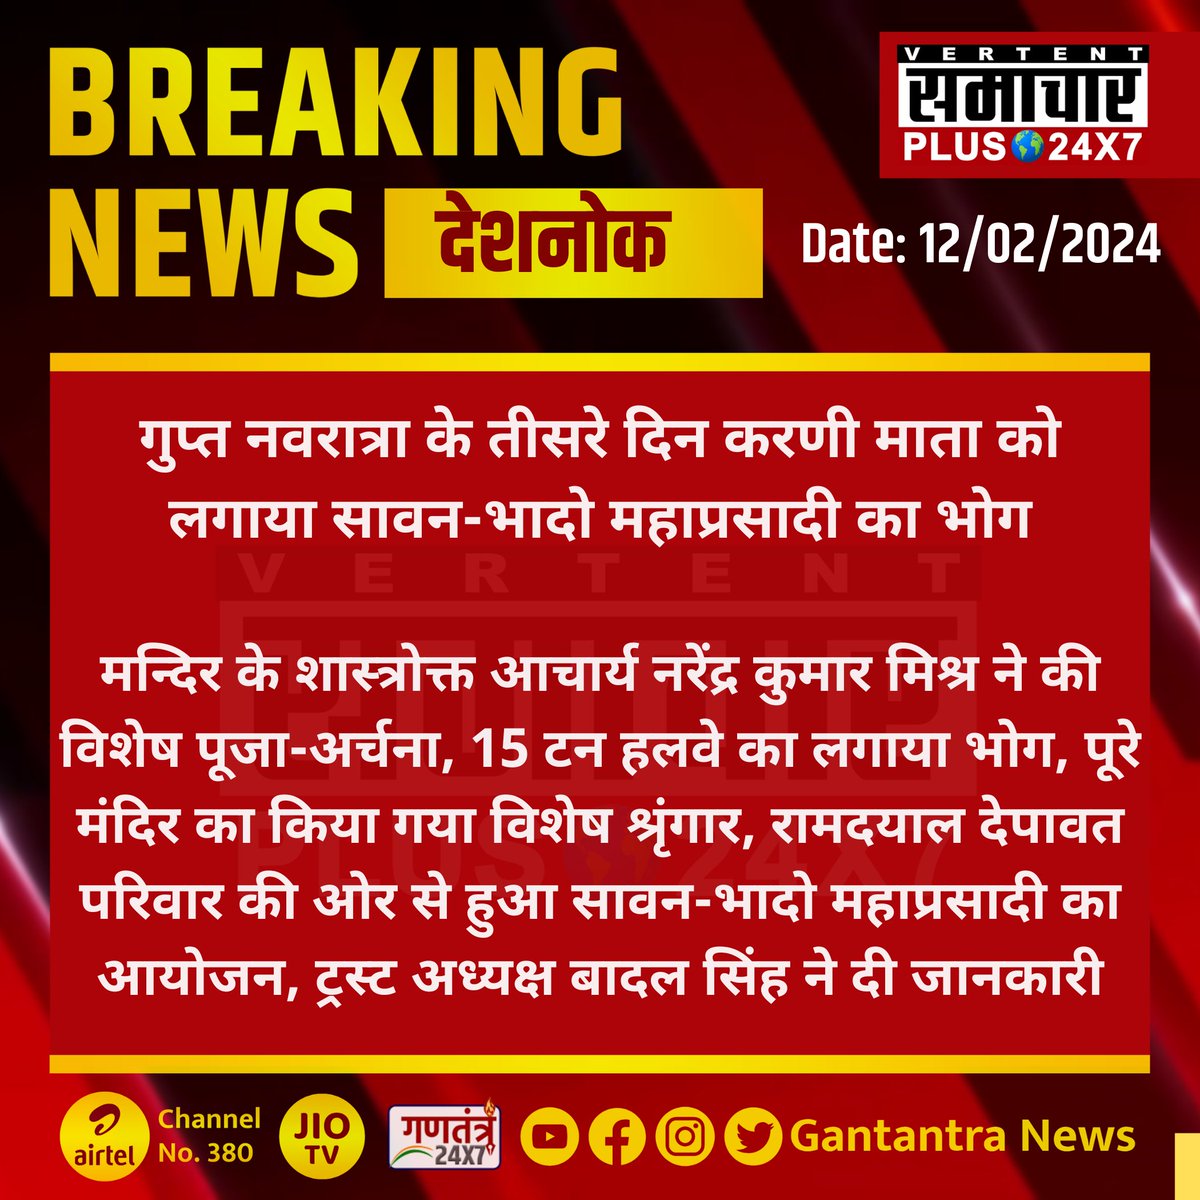 देशनोक ; गुप्त नवरात्रा के तीसरे दिन करणी माता को लगाया सावन-भादो महाप्रसादी का भोग

 #Deshnok #GantantraNews #Rajasthan #guptnavratri #Bikaner